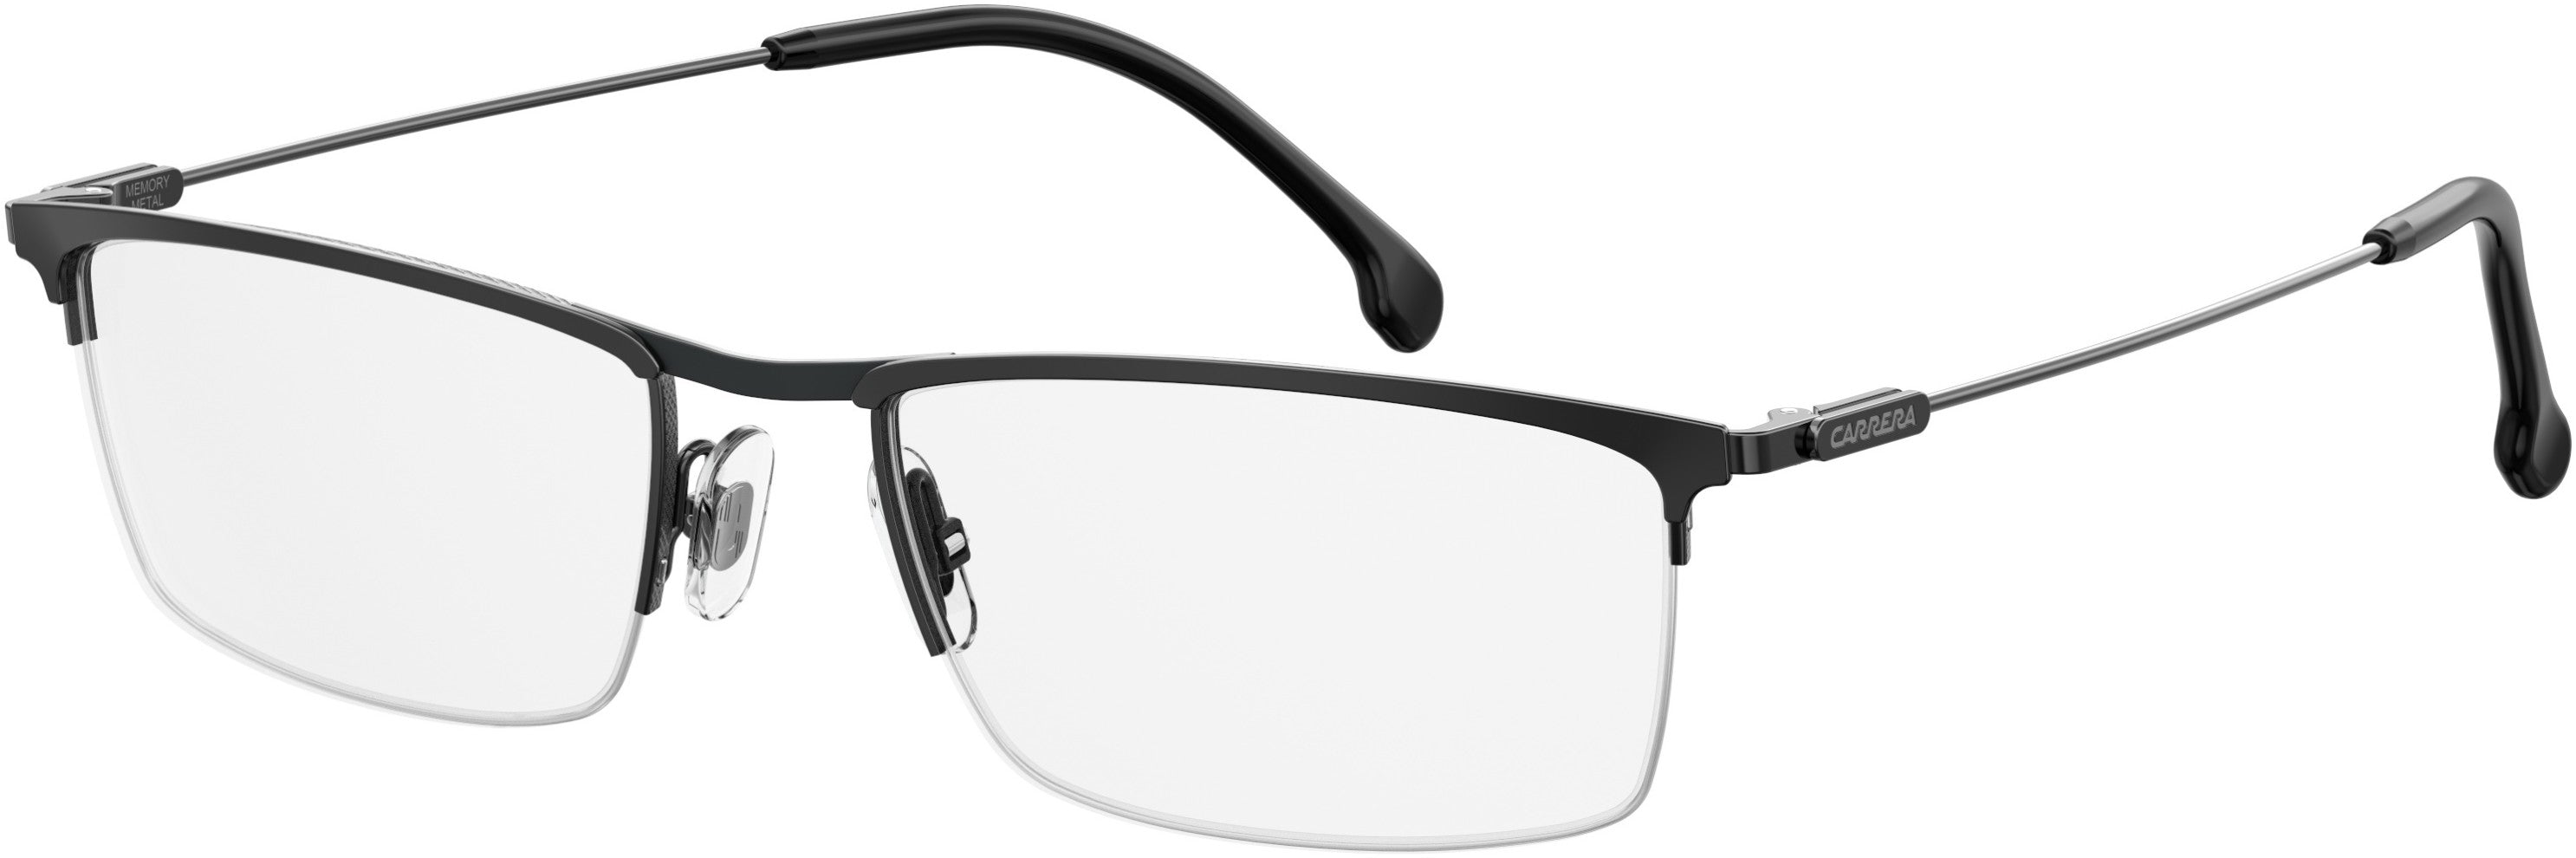  Carrera 190 Rectangular Eyeglasses 0V81-0V81  Dark Ruthenium Black (00 Demo Lens)